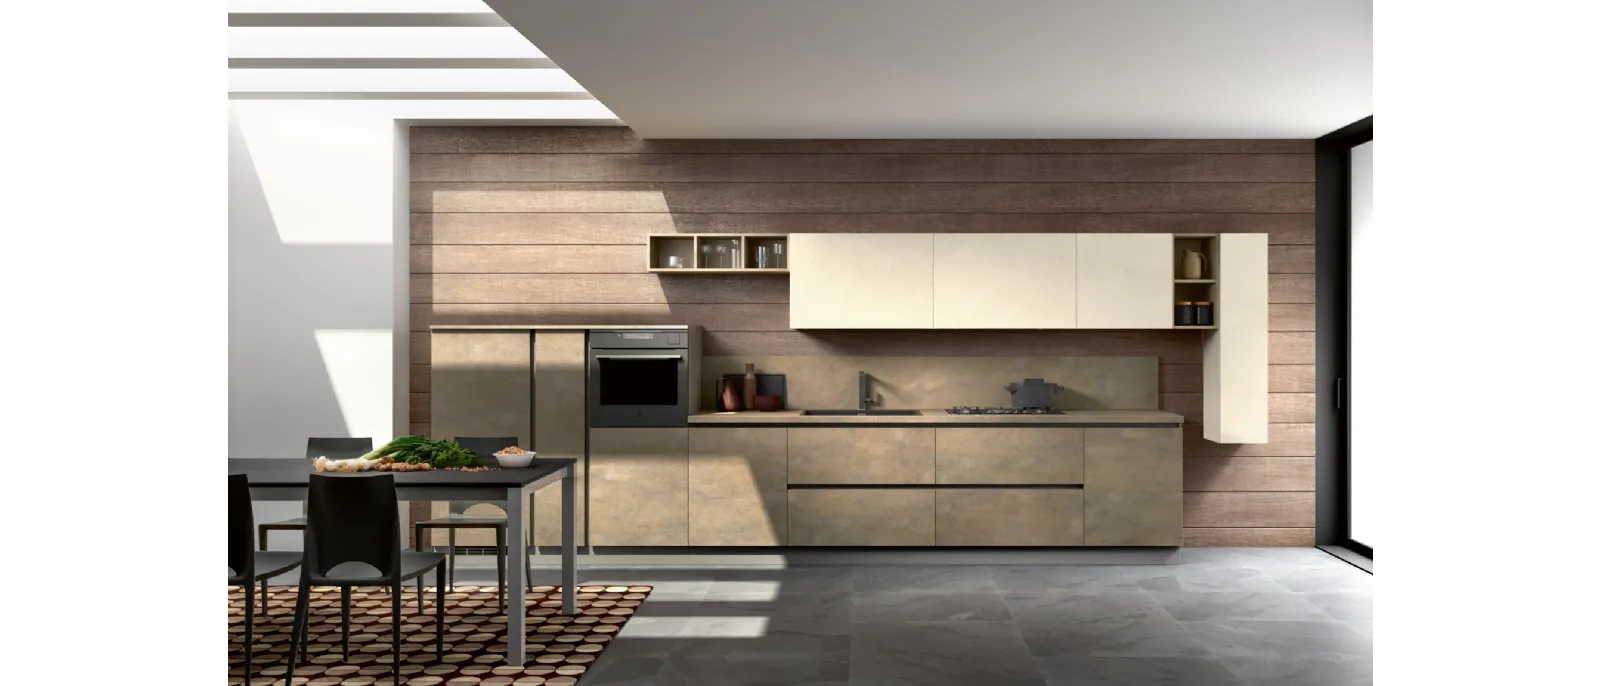 Modern linear kitchen Stella composition 04 by Essebi.